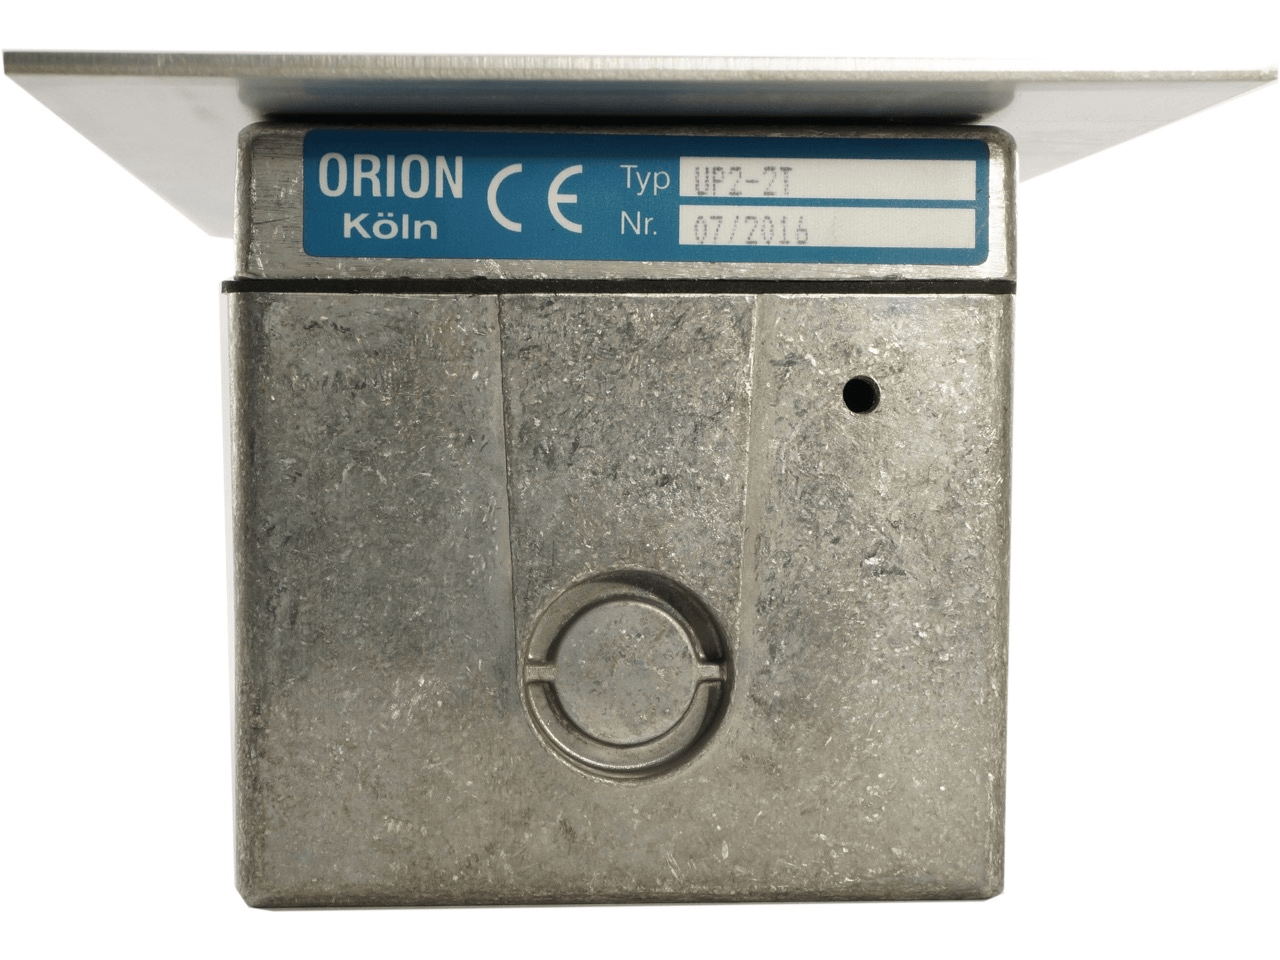 Orion UP 2-2T Schlüsseltaster Unterputz 2-seitig mit Taste HALT